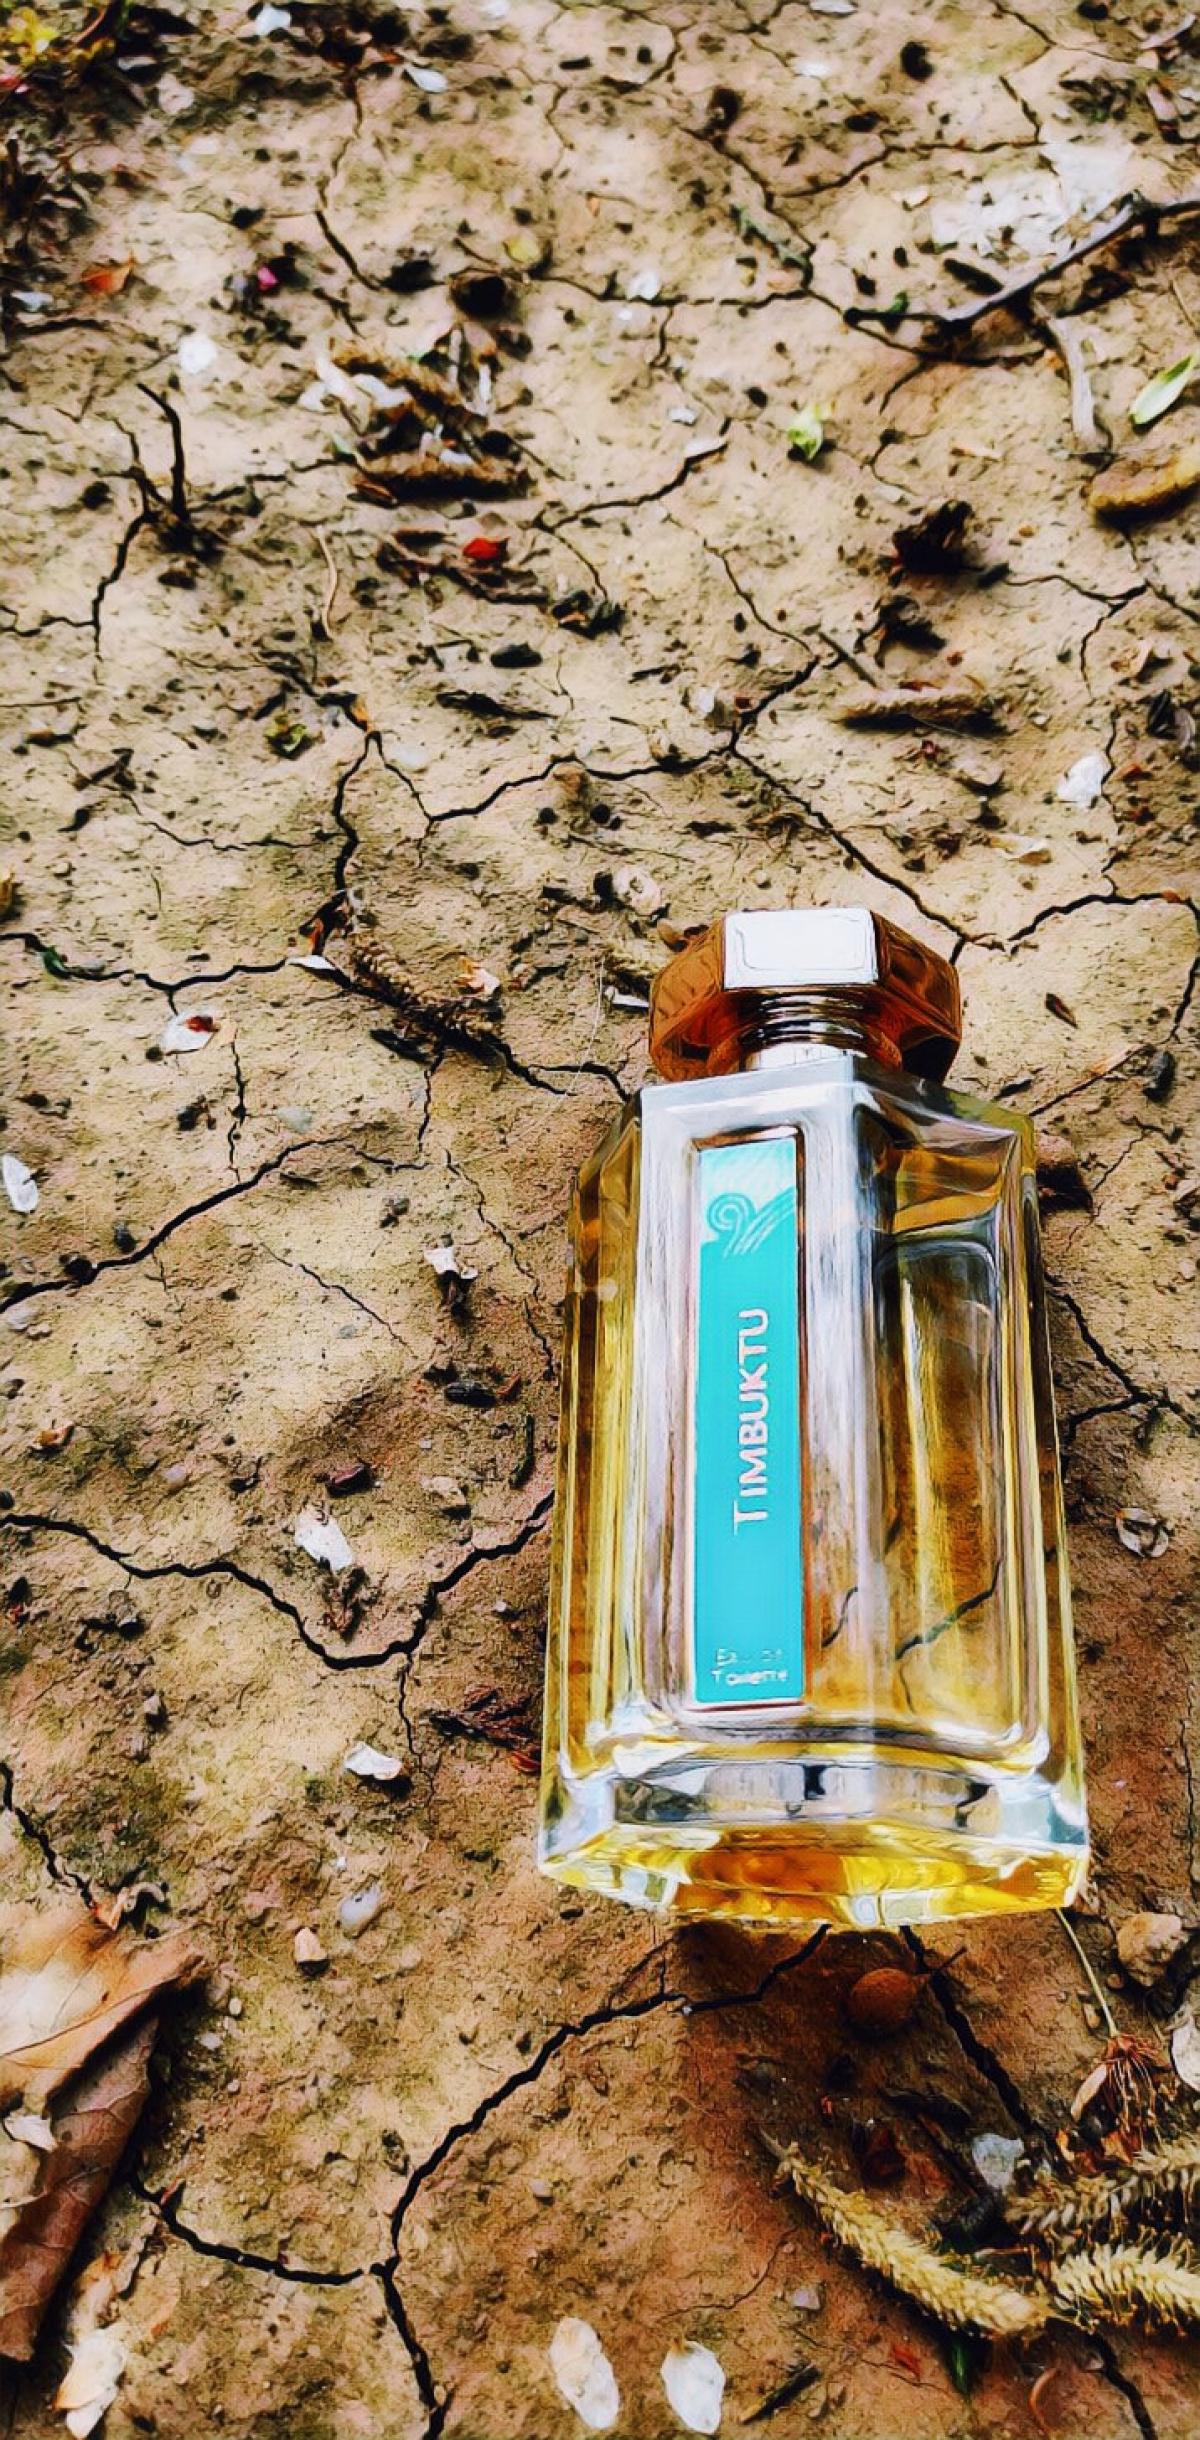 L'Artisan Parfumeur La Chasse aux Papillons Fragrances - Perfumes,  Colognes, Parfums, Scents resource guide - The Perfume Girl